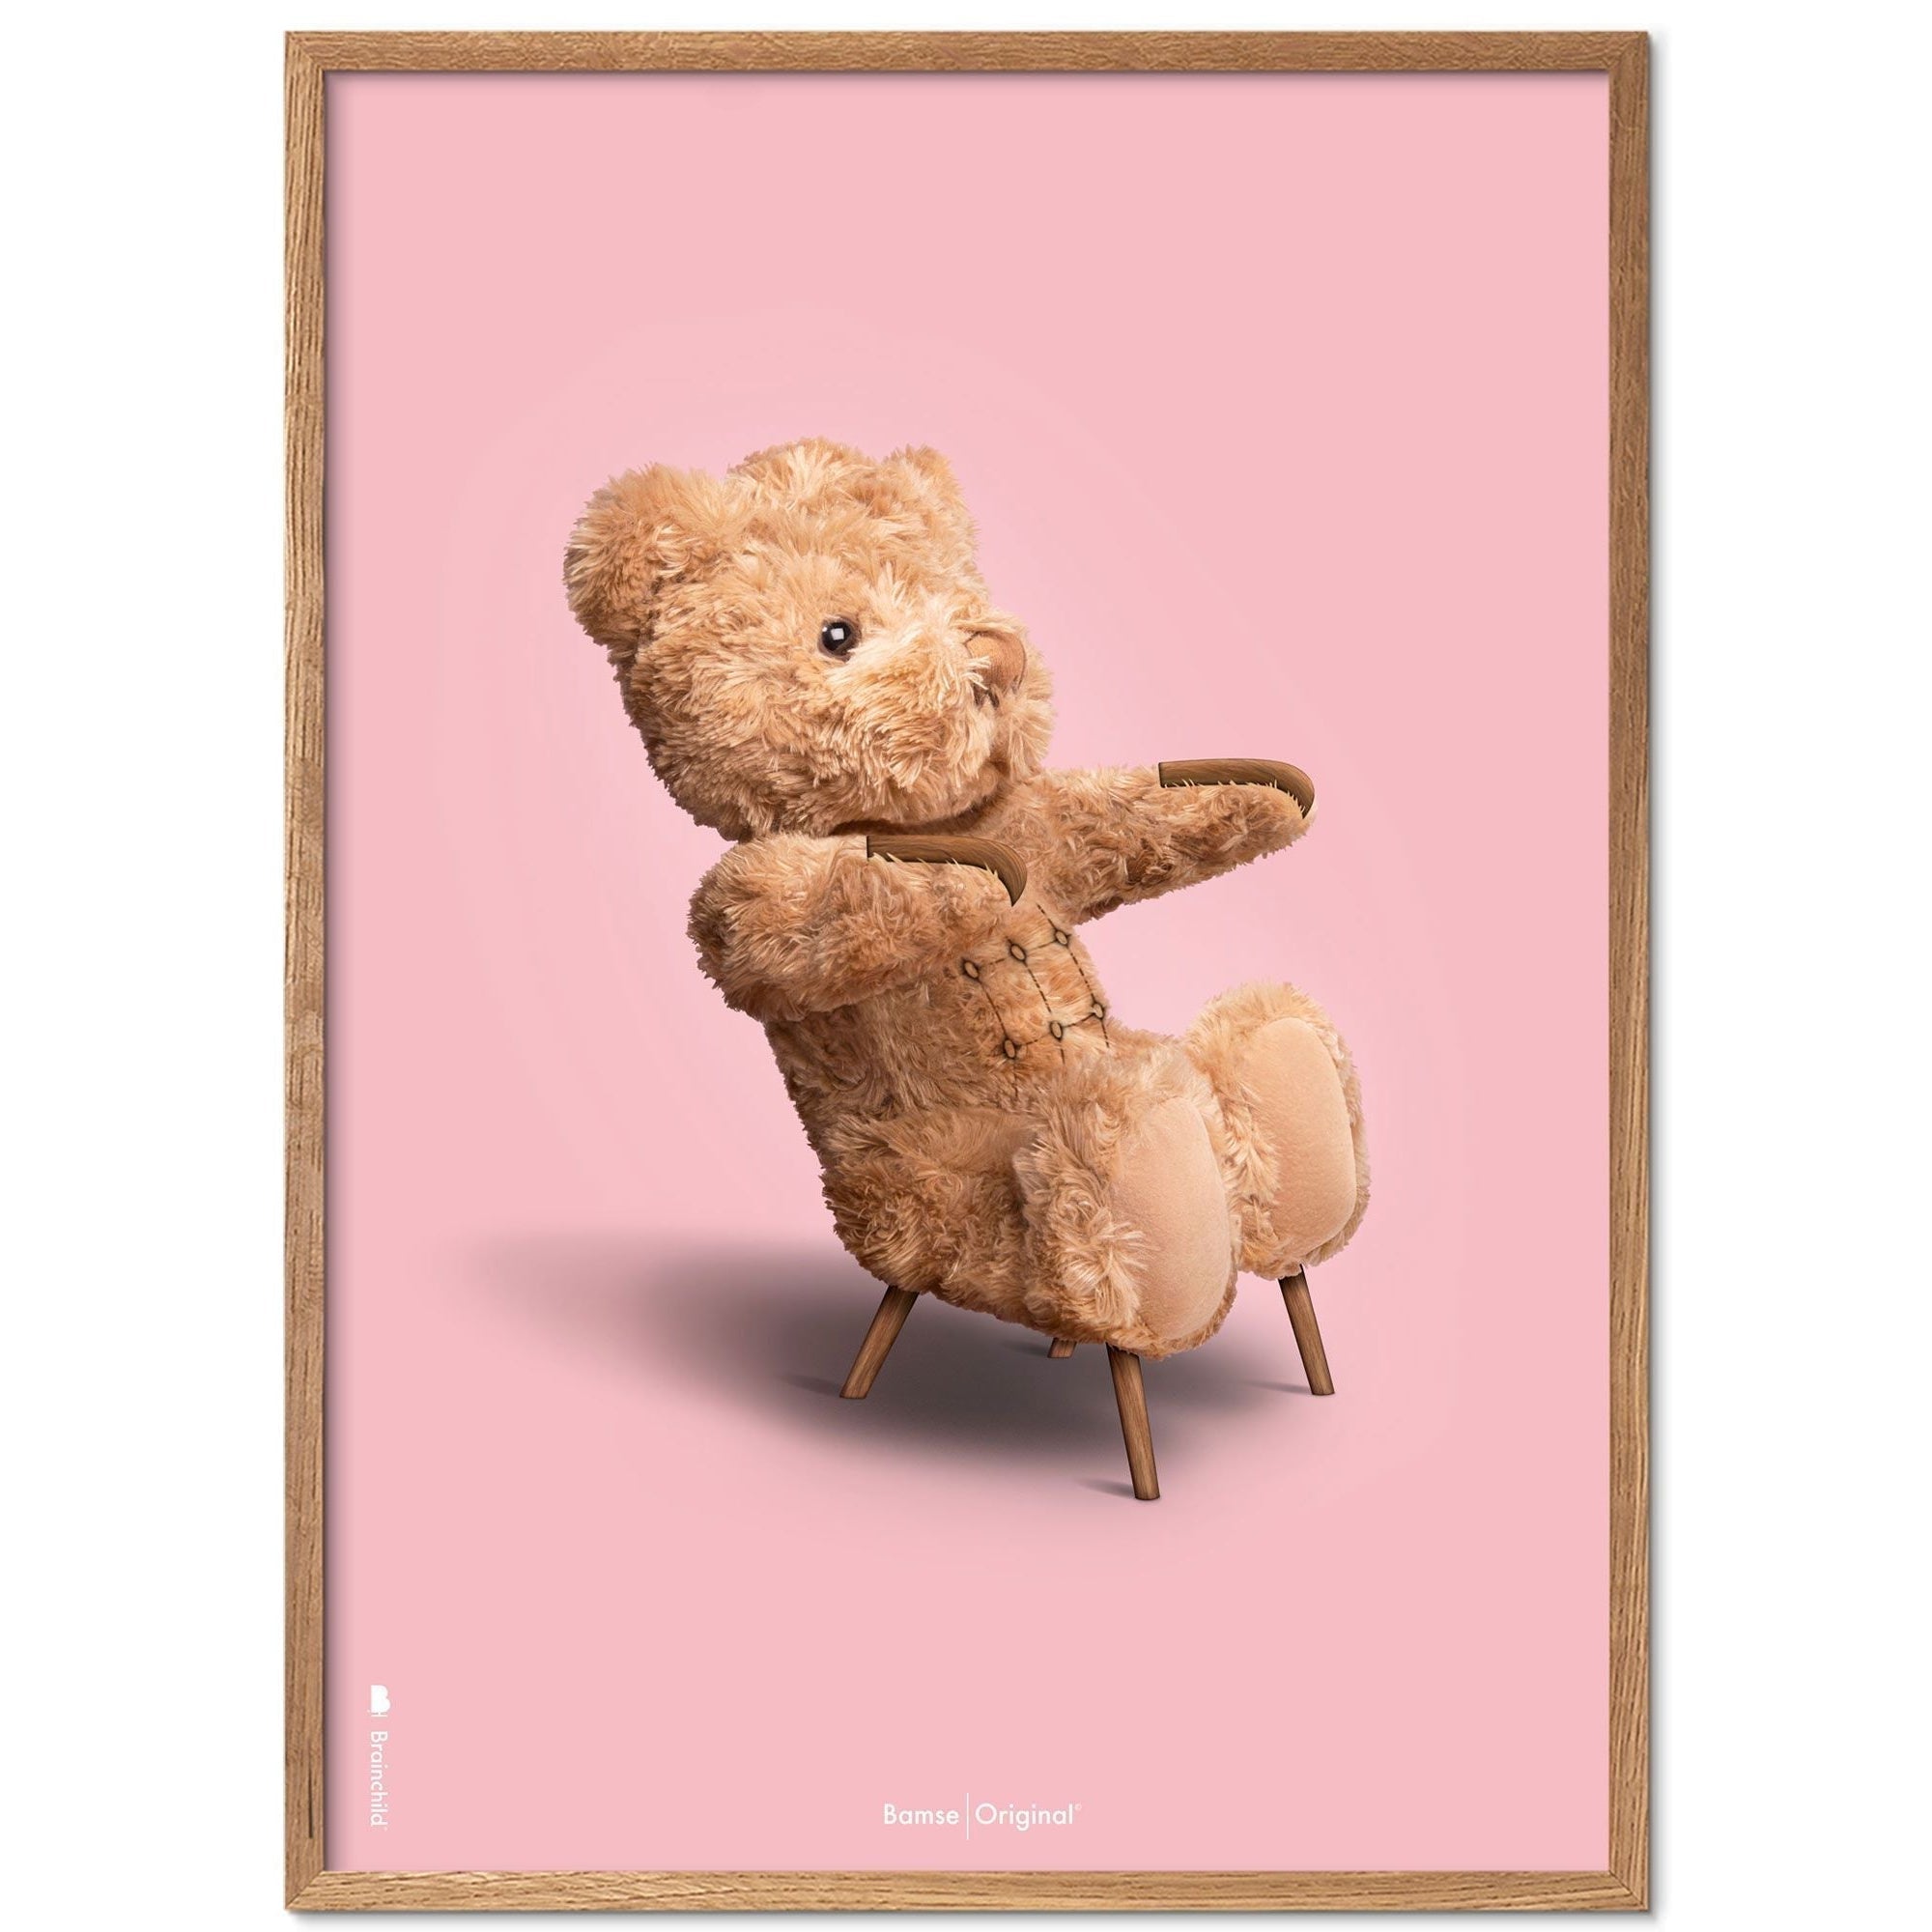 Brainchild Nallebjörn klassisk affischram gjord av lätt trä ramme 30x40 cm, rosa bakgrund